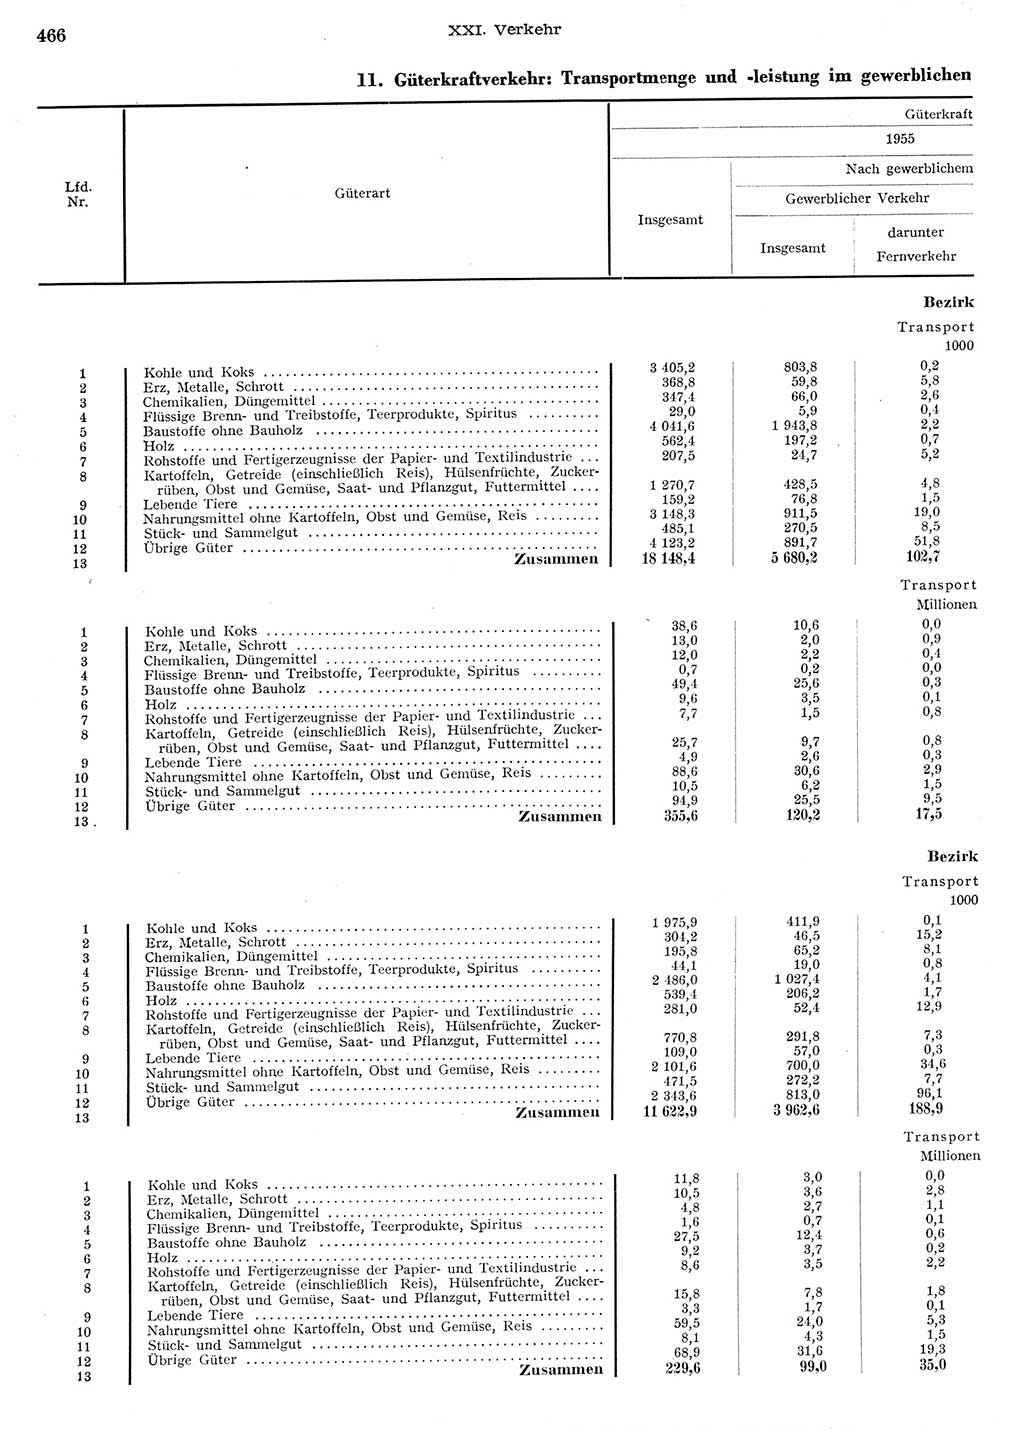 Statistisches Jahrbuch der Deutschen Demokratischen Republik (DDR) 1956, Seite 466 (Stat. Jb. DDR 1956, S. 466)